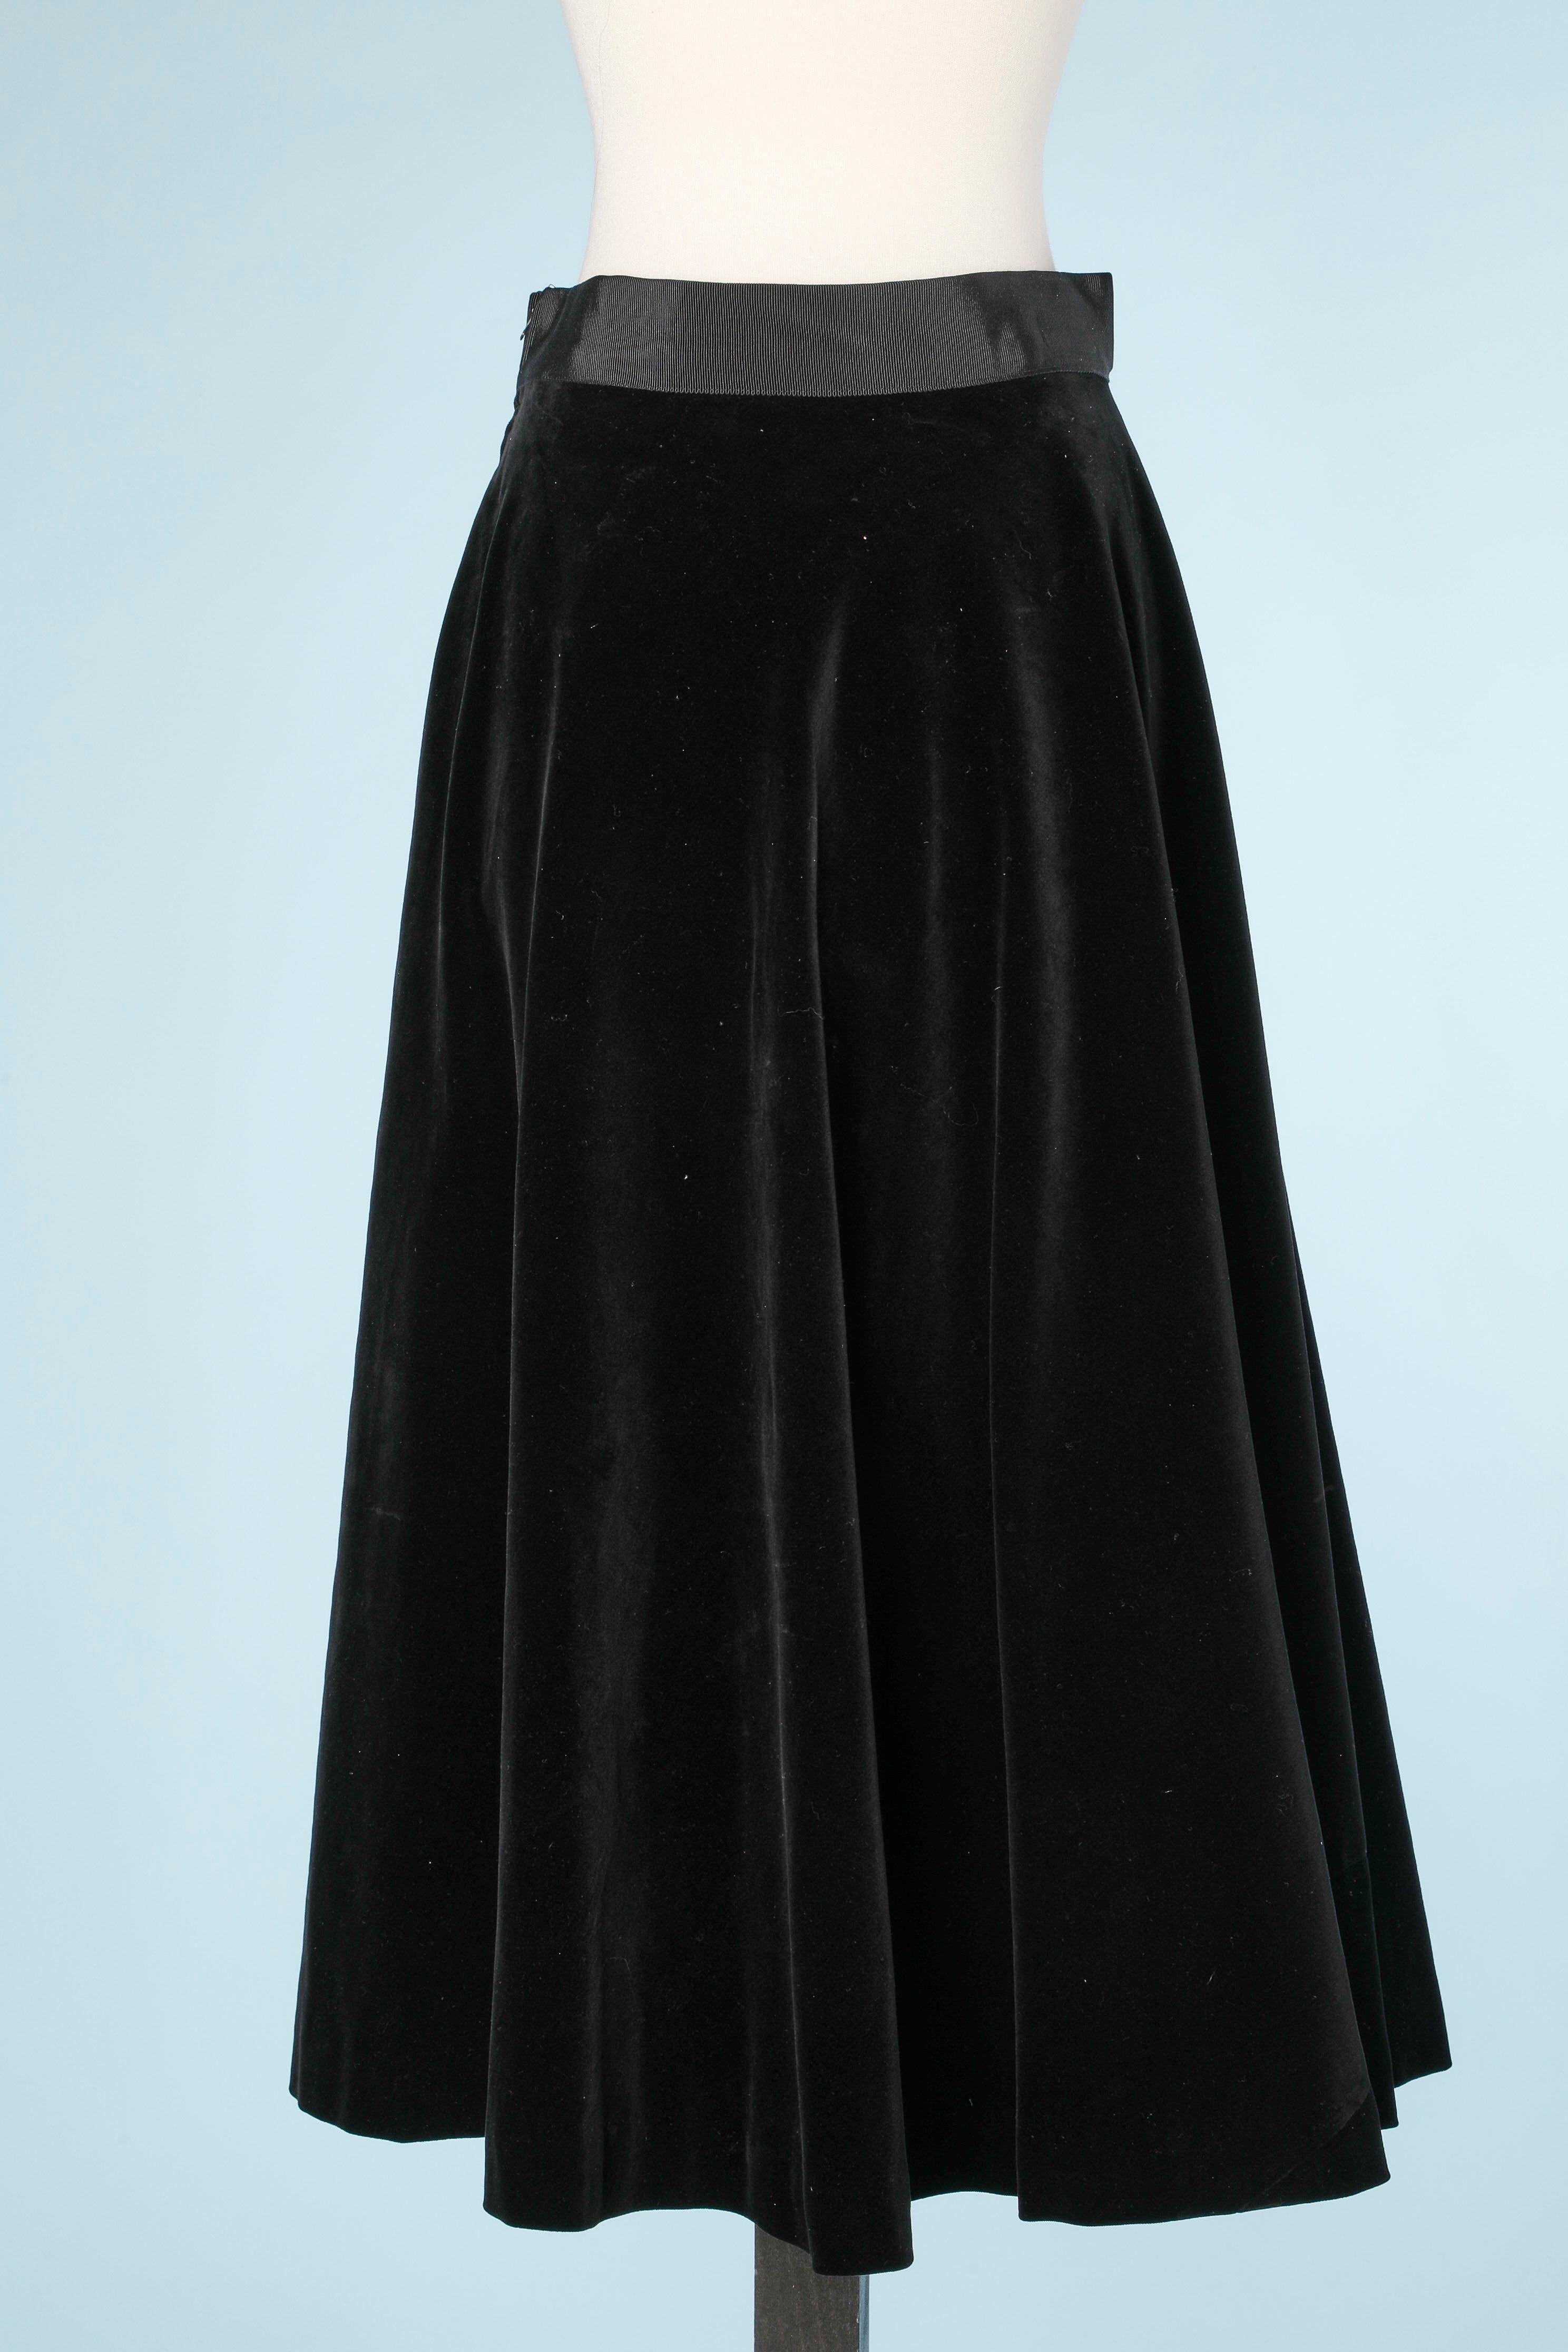 Black velvet circle skirt with horses embroidered  1